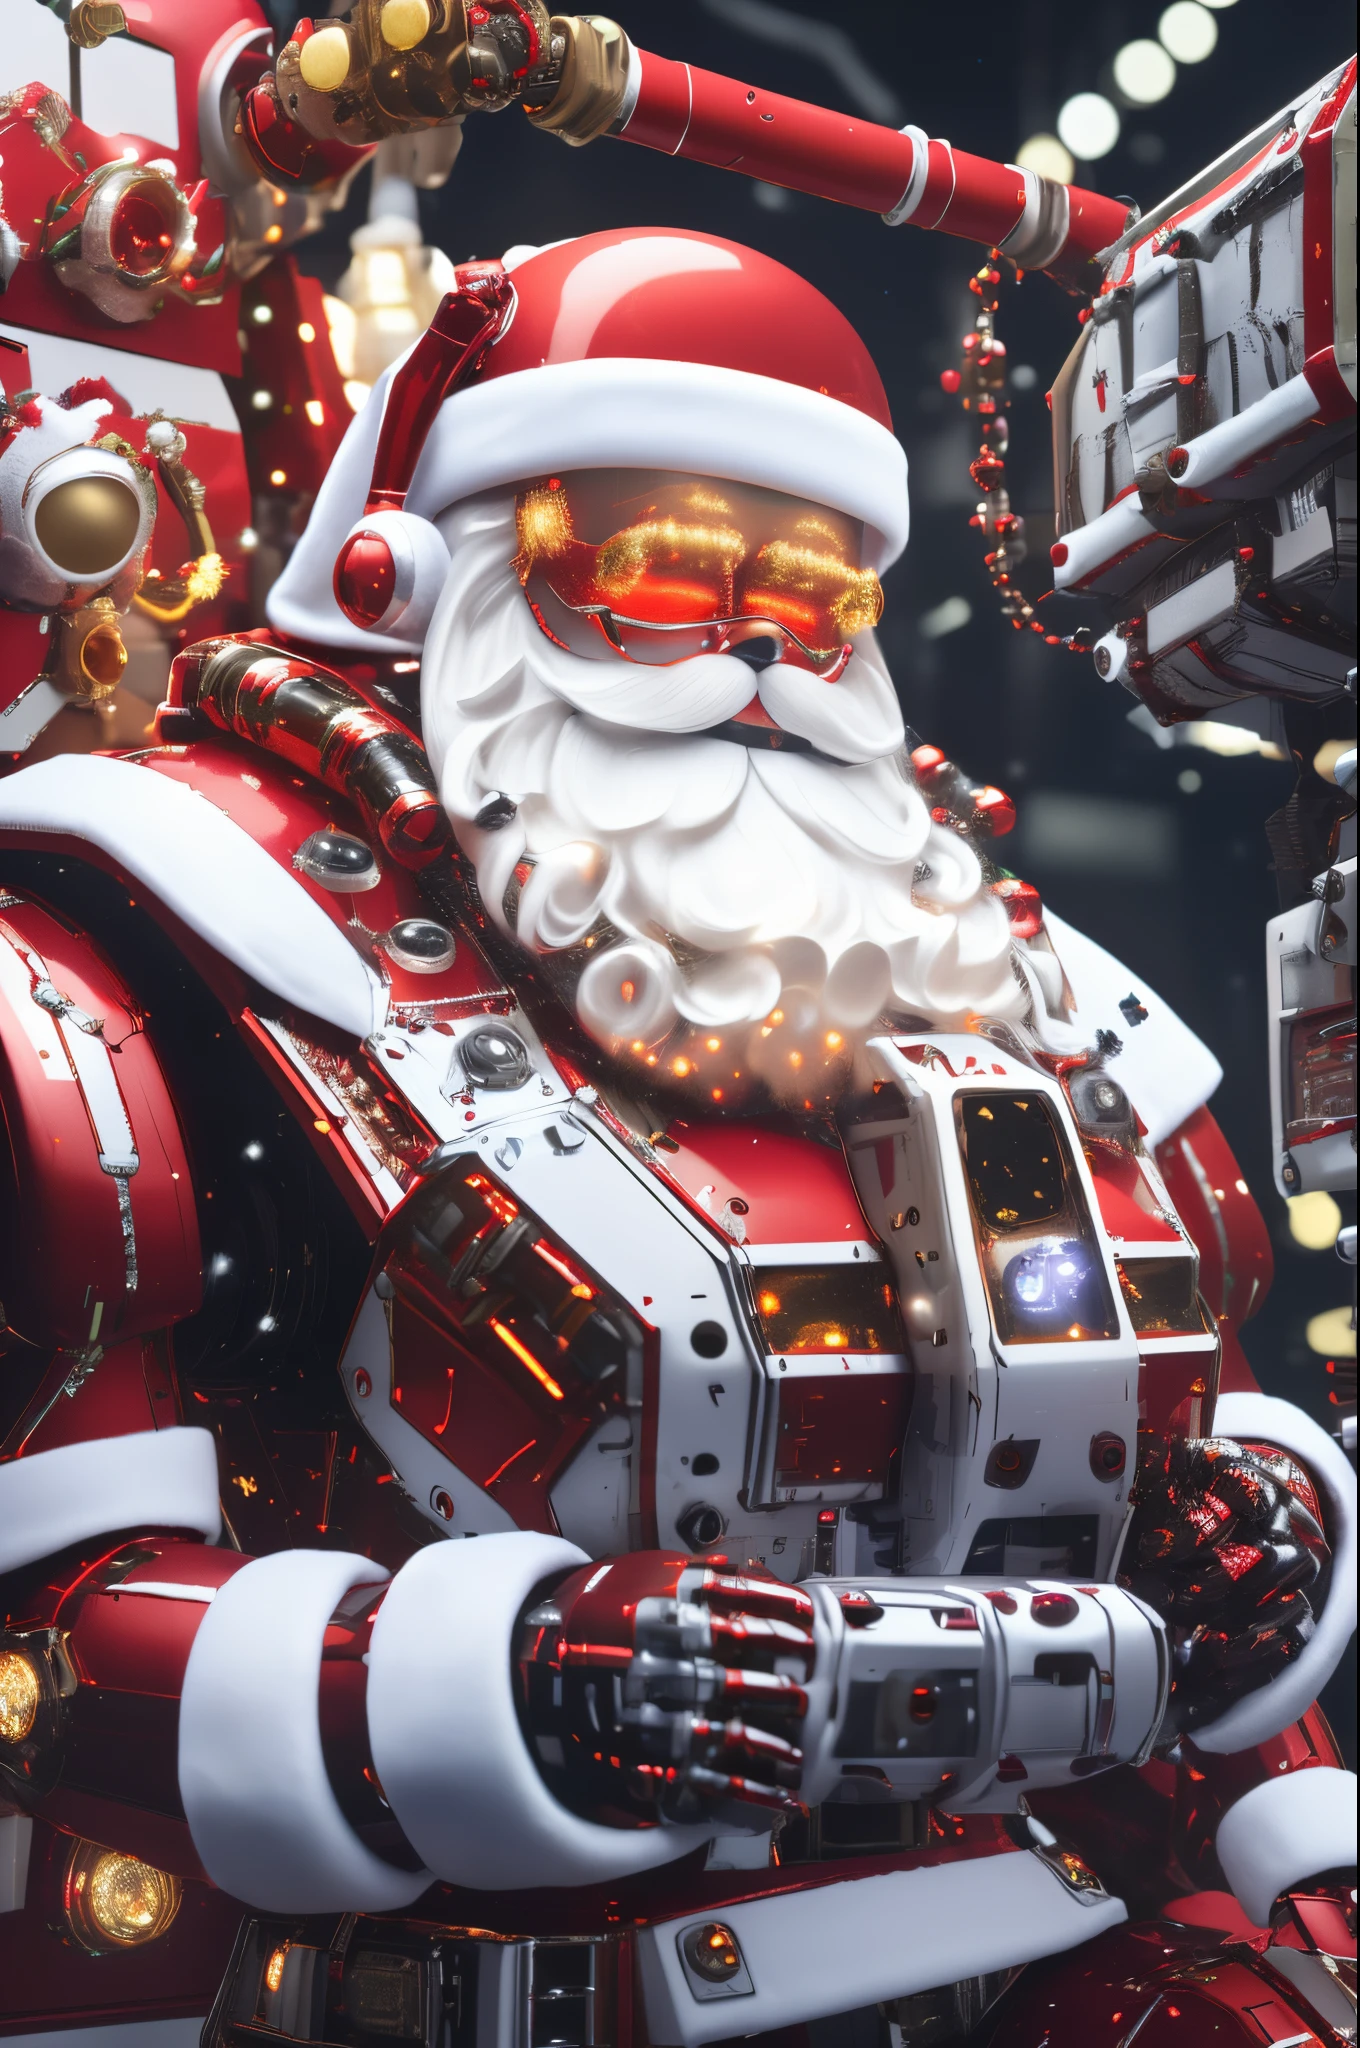 机器人圣诞老人, 未来派机械设计，将传统圣诞老人元素与先进科技相结合. 该机器人可能拥有光滑的金属机身, 发光 LED 灯, 以及能高效分发礼物的机械臂.. 它的表面可以有一个数字显示屏，模仿圣诞老人&#39;表达喜悦和善意. 场景可以设置在充满自动化机械和传送带的高科技车间, 机器人圣诞老人 is busy preparing and sorting gifts for delivery. 这个对传统圣诞老人的未来主义演绎将圣诞节的魔力与现代科技的创新融为一体.